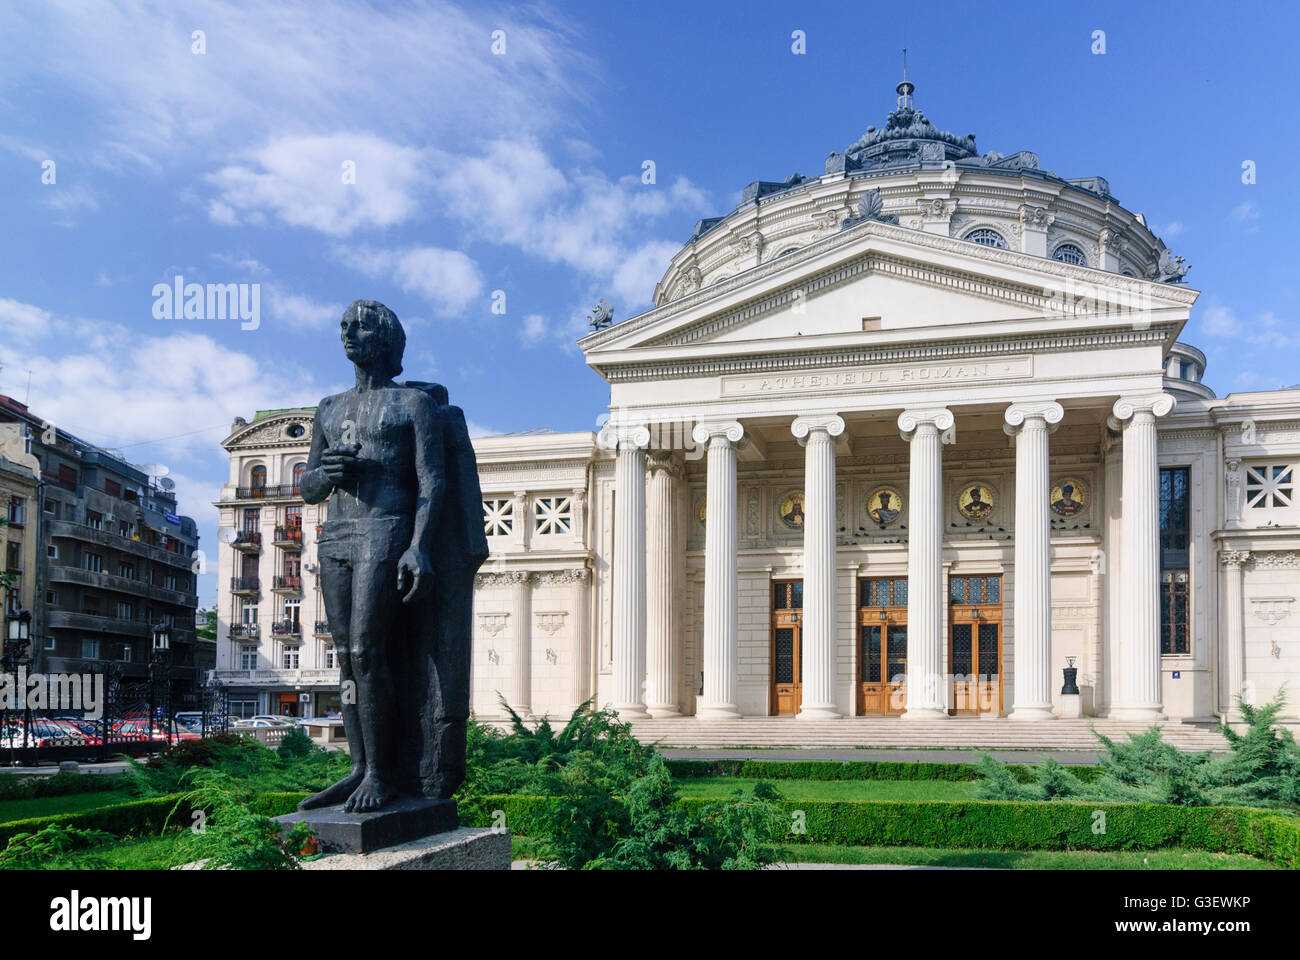 Athenaeum , siège de l'Orchestre philharmonique d'État George Enescu , Statue de George Enescu, Roumanie BUCAREST Bucuresti Banque D'Images